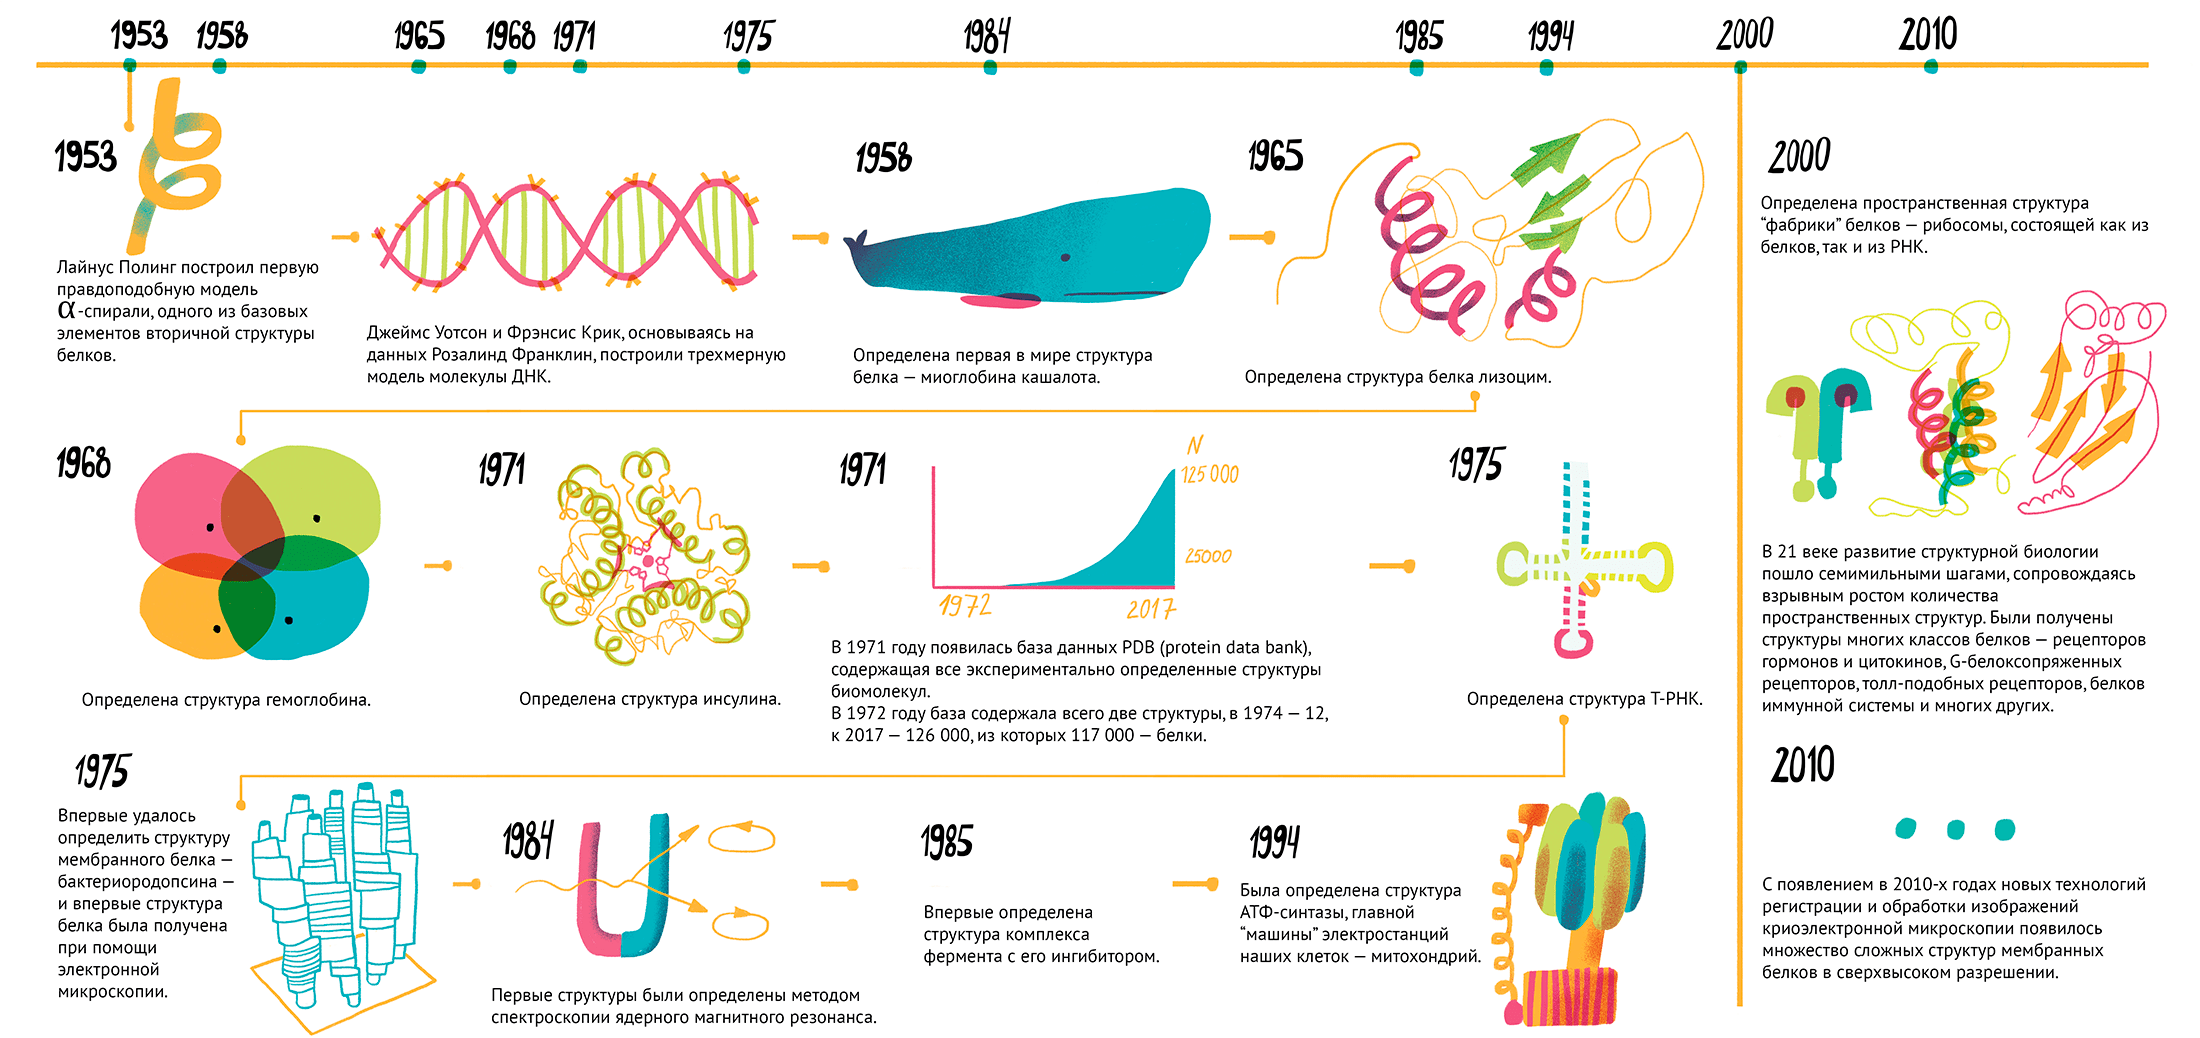 История структурной биологии